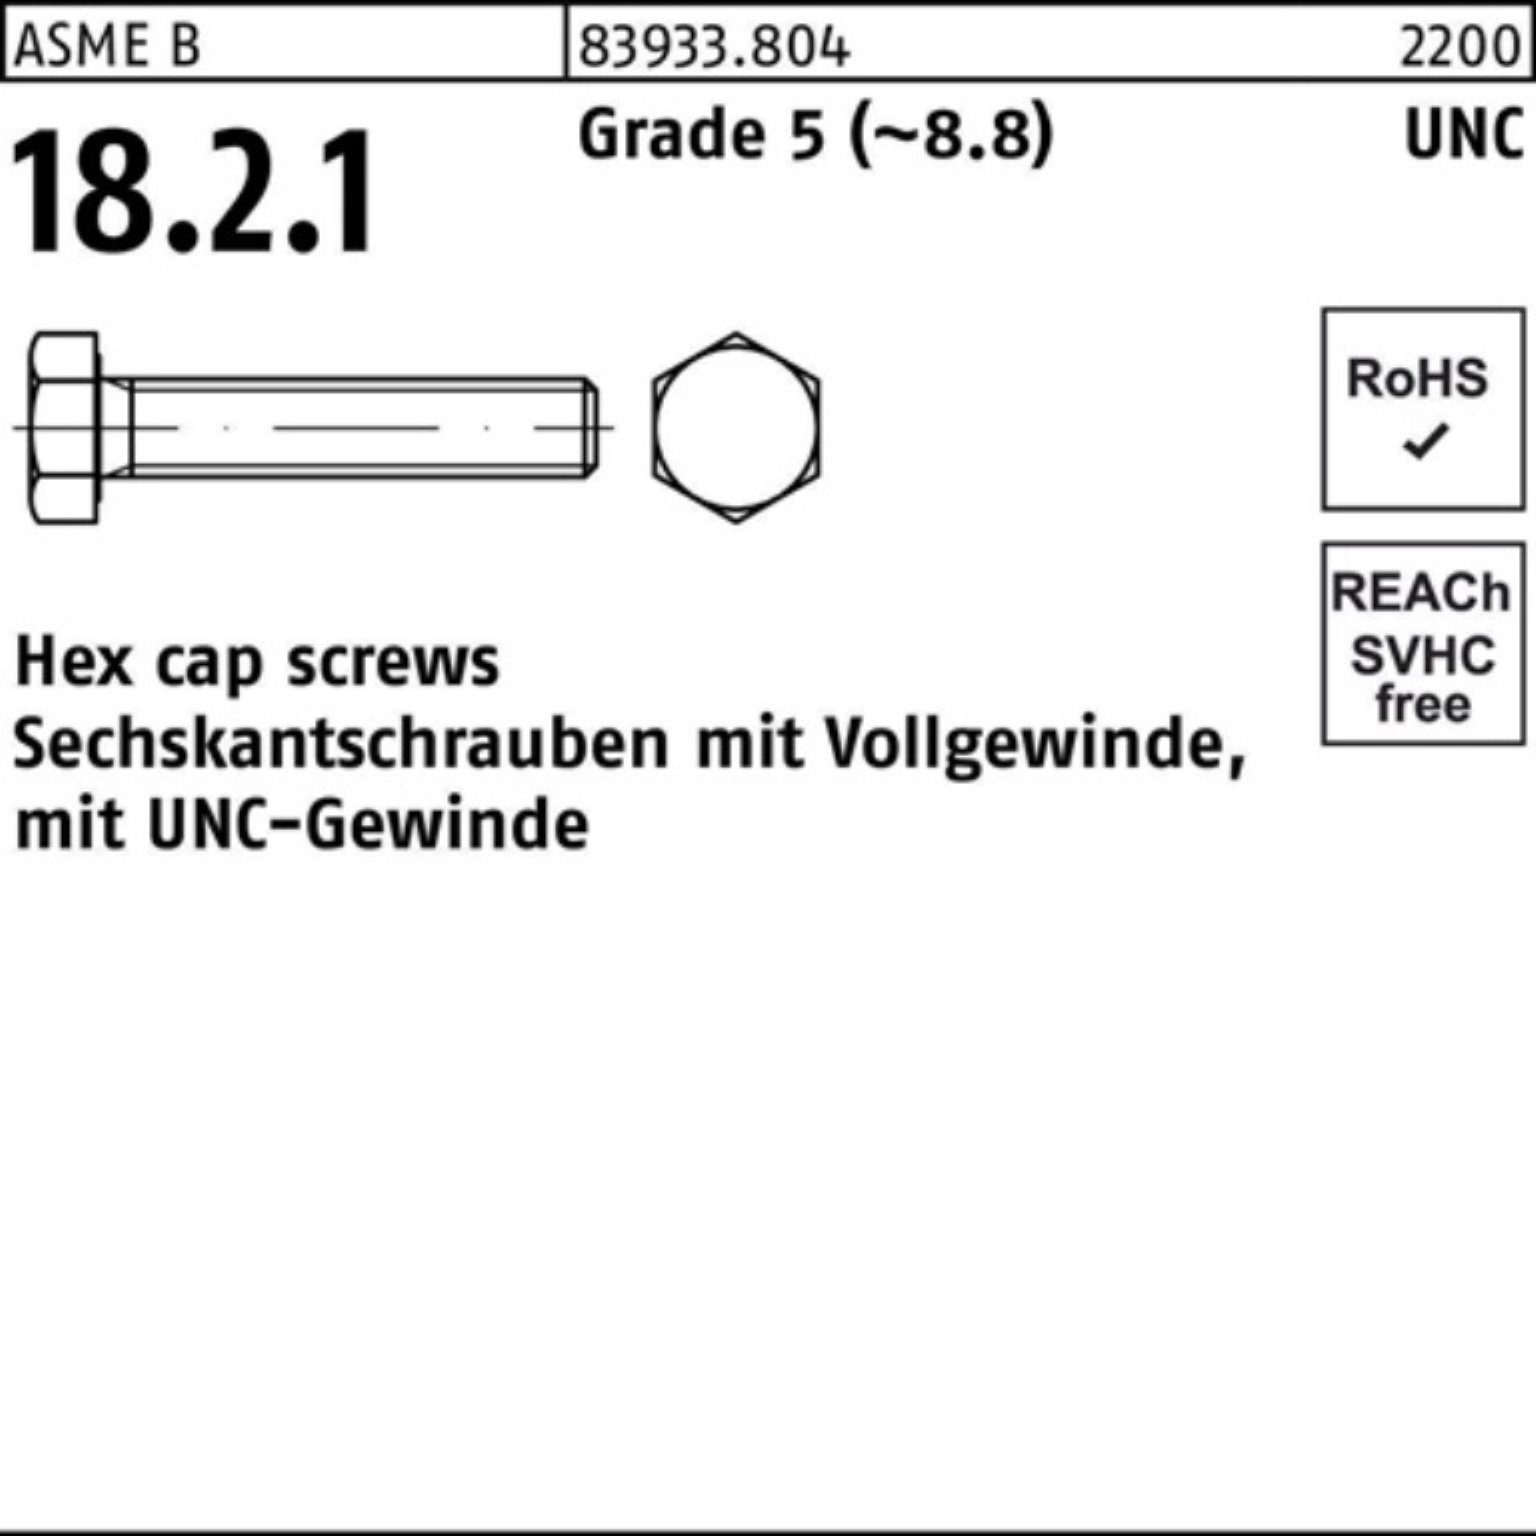 Reyher Sechskantschraube 100er Pack Sechskantschraube R 83933 UNC-Gewinde VG 3/4x 1 1/2 Grade 5